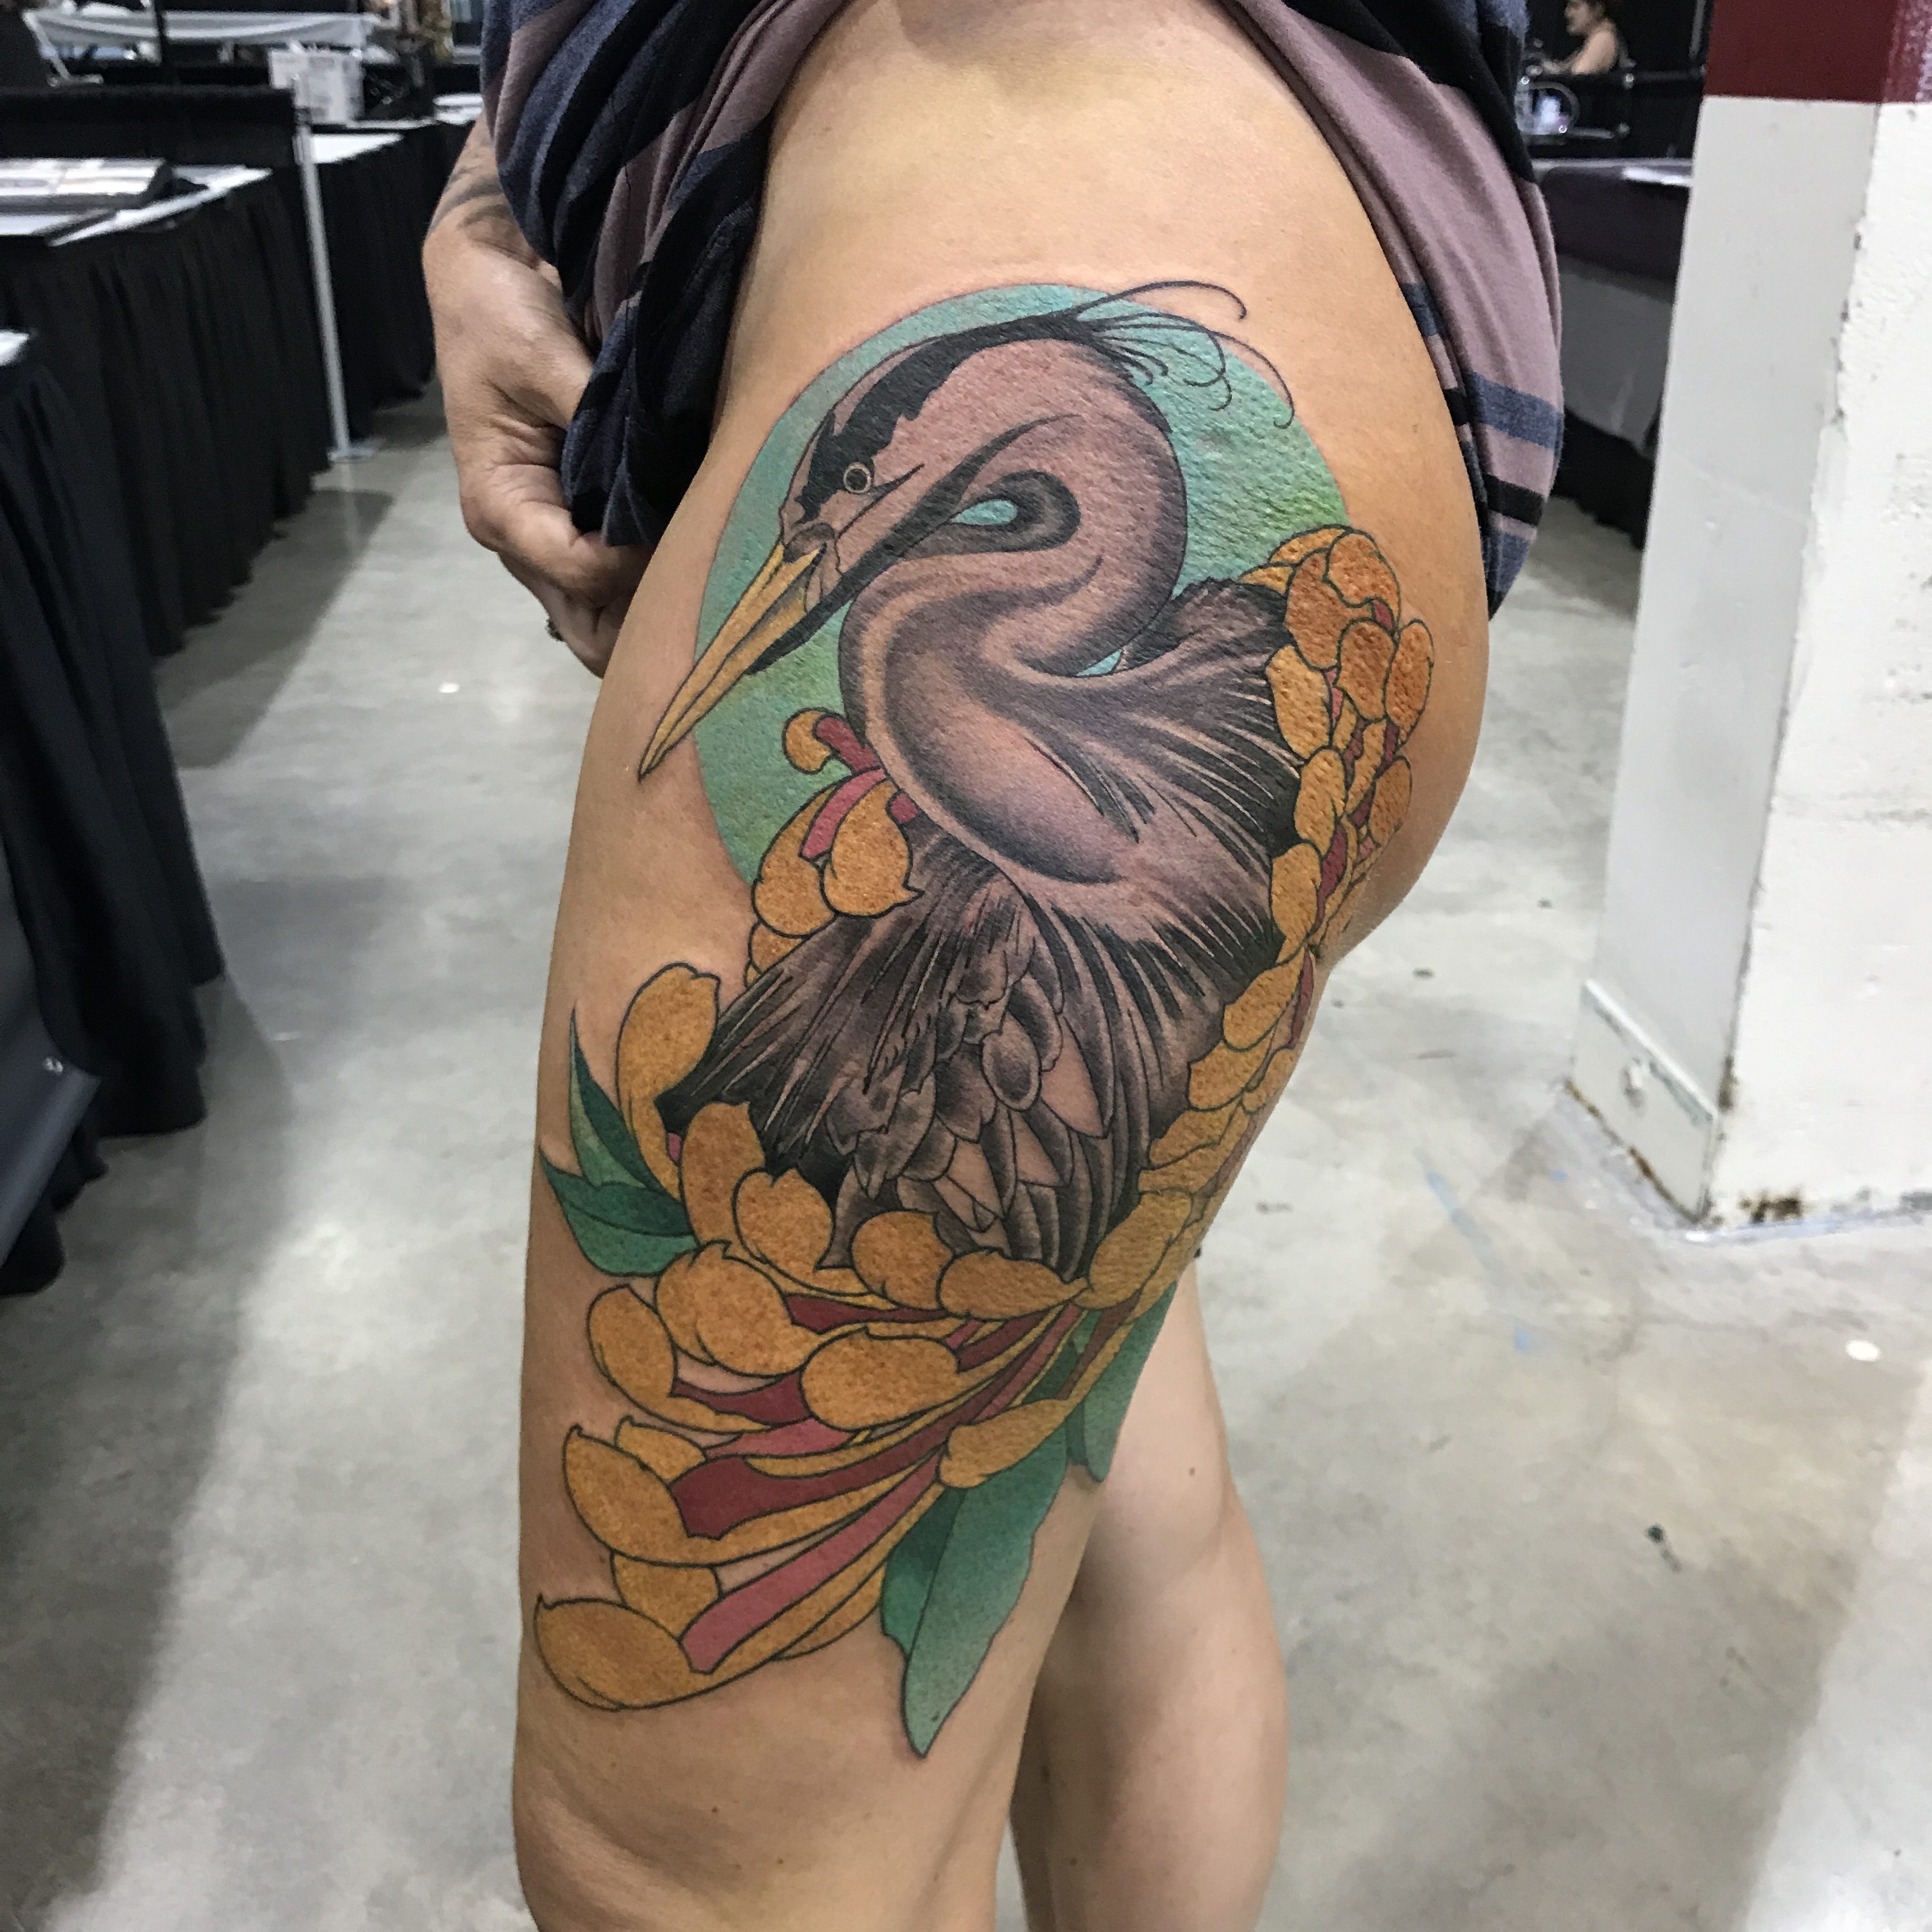 darcy cameron tattoo 2019 Okanagan Tattoo Show & Brewfest Artist